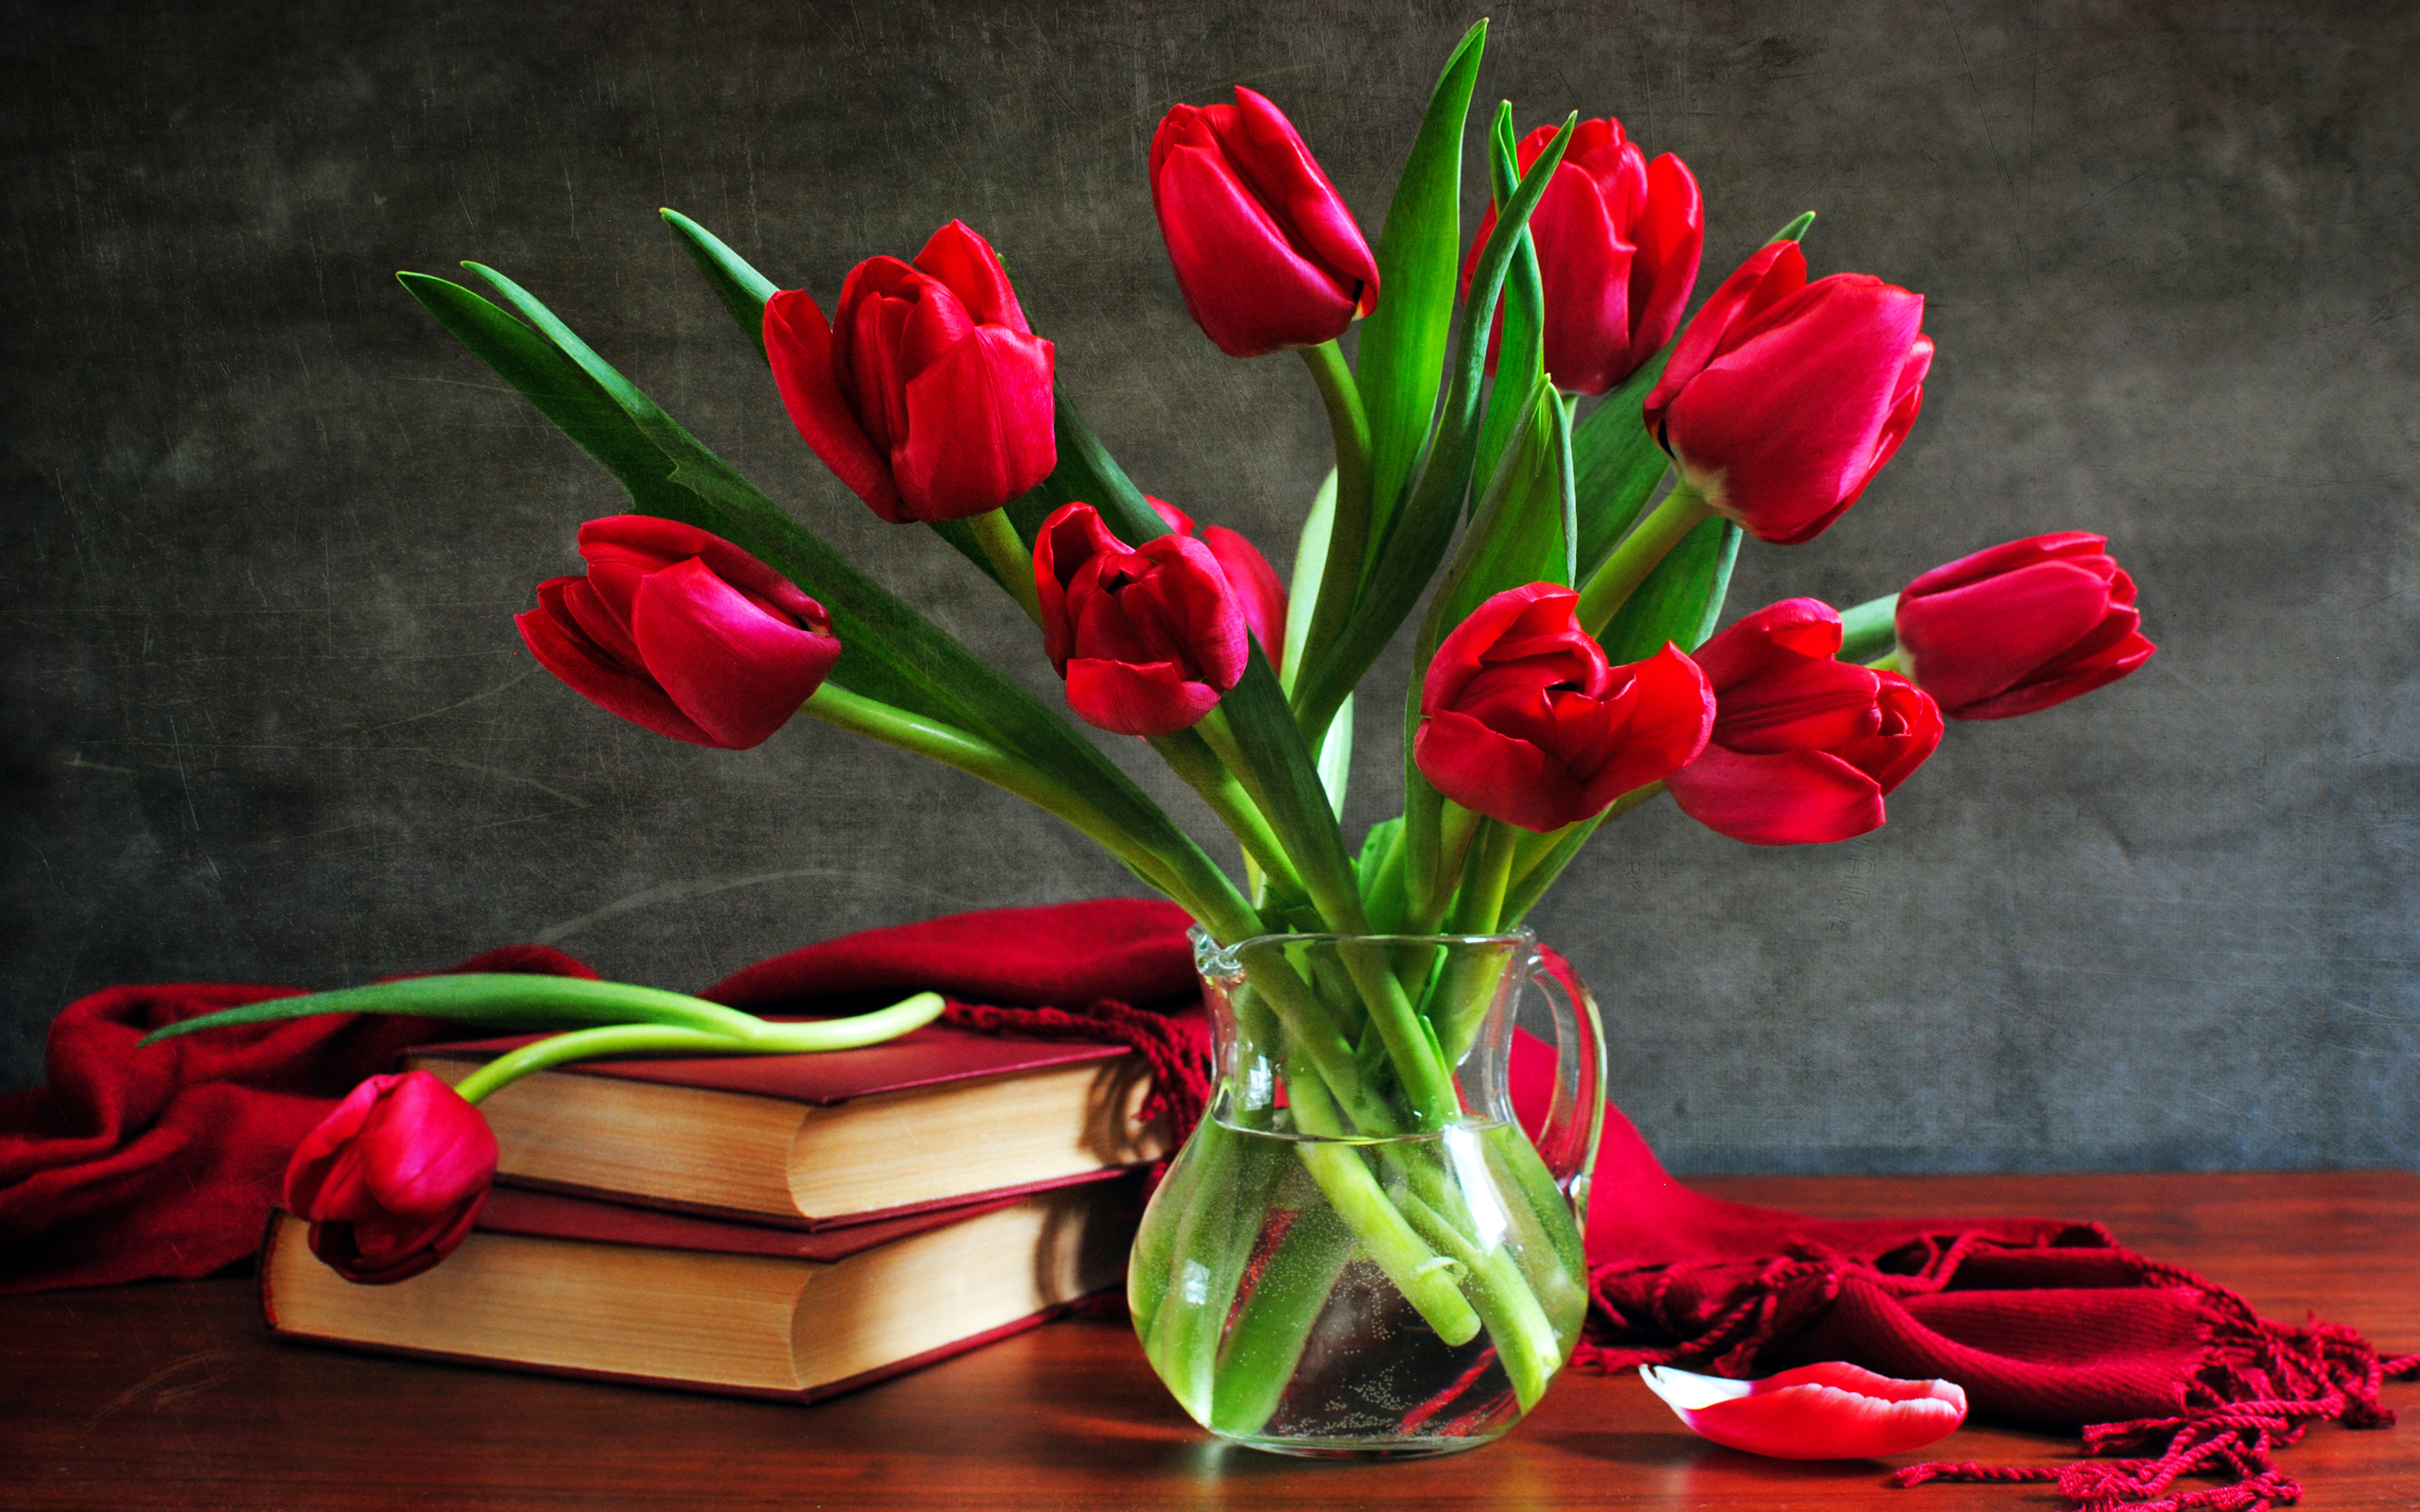 Book Flower Pitcher Red Flower Scarf Still Life Tulip 2560x1600